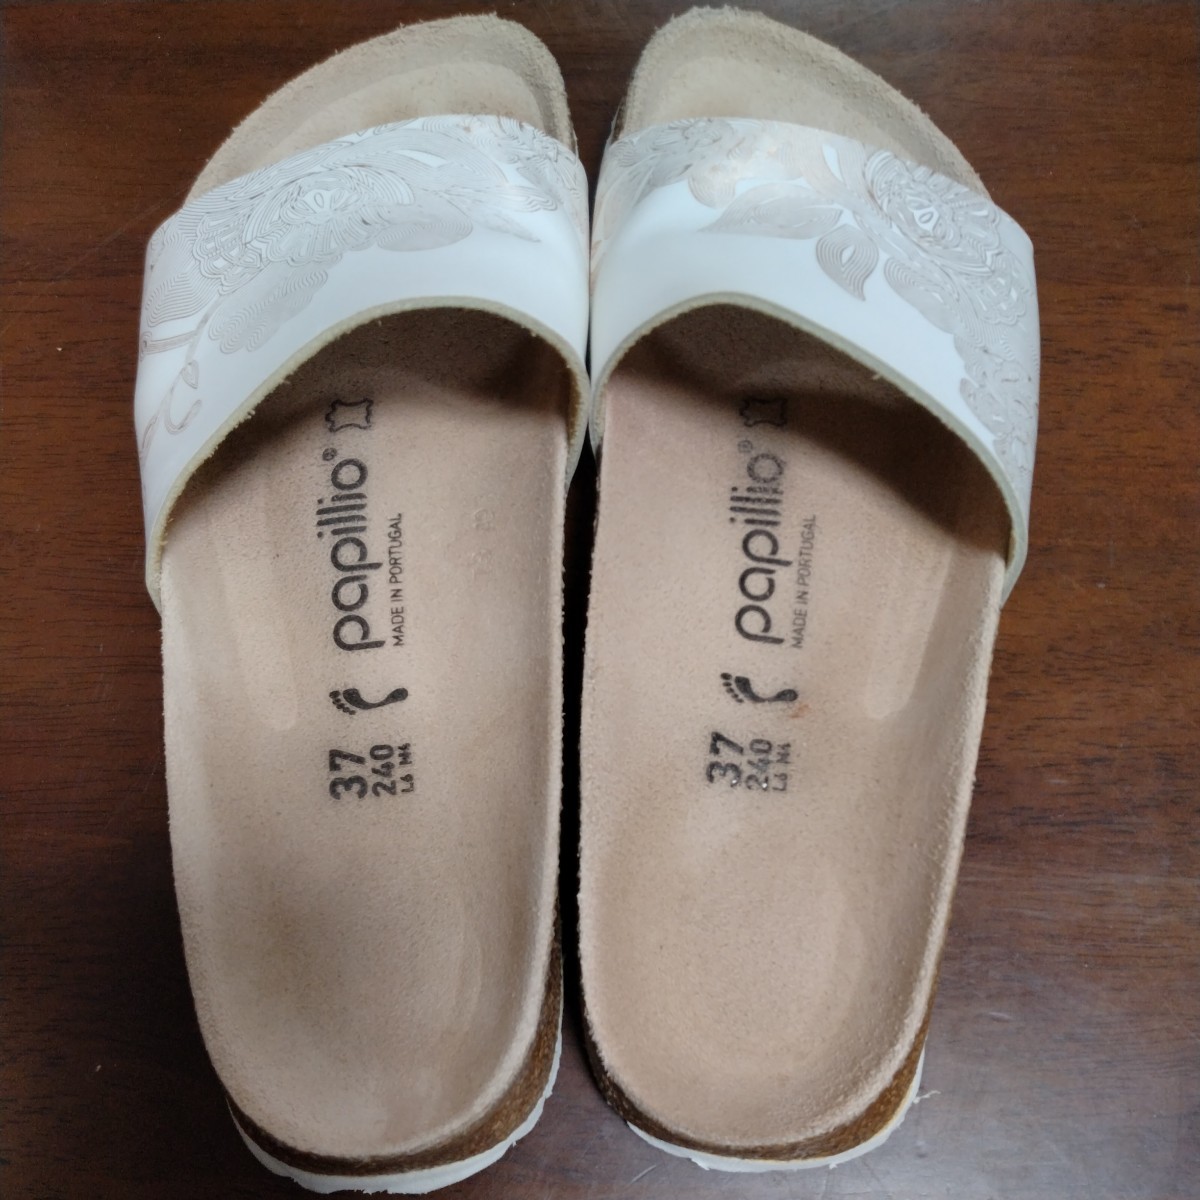 papillio owner men tsu white white 37 24cm Bill ticket sandals slip-on shoes papi rio 